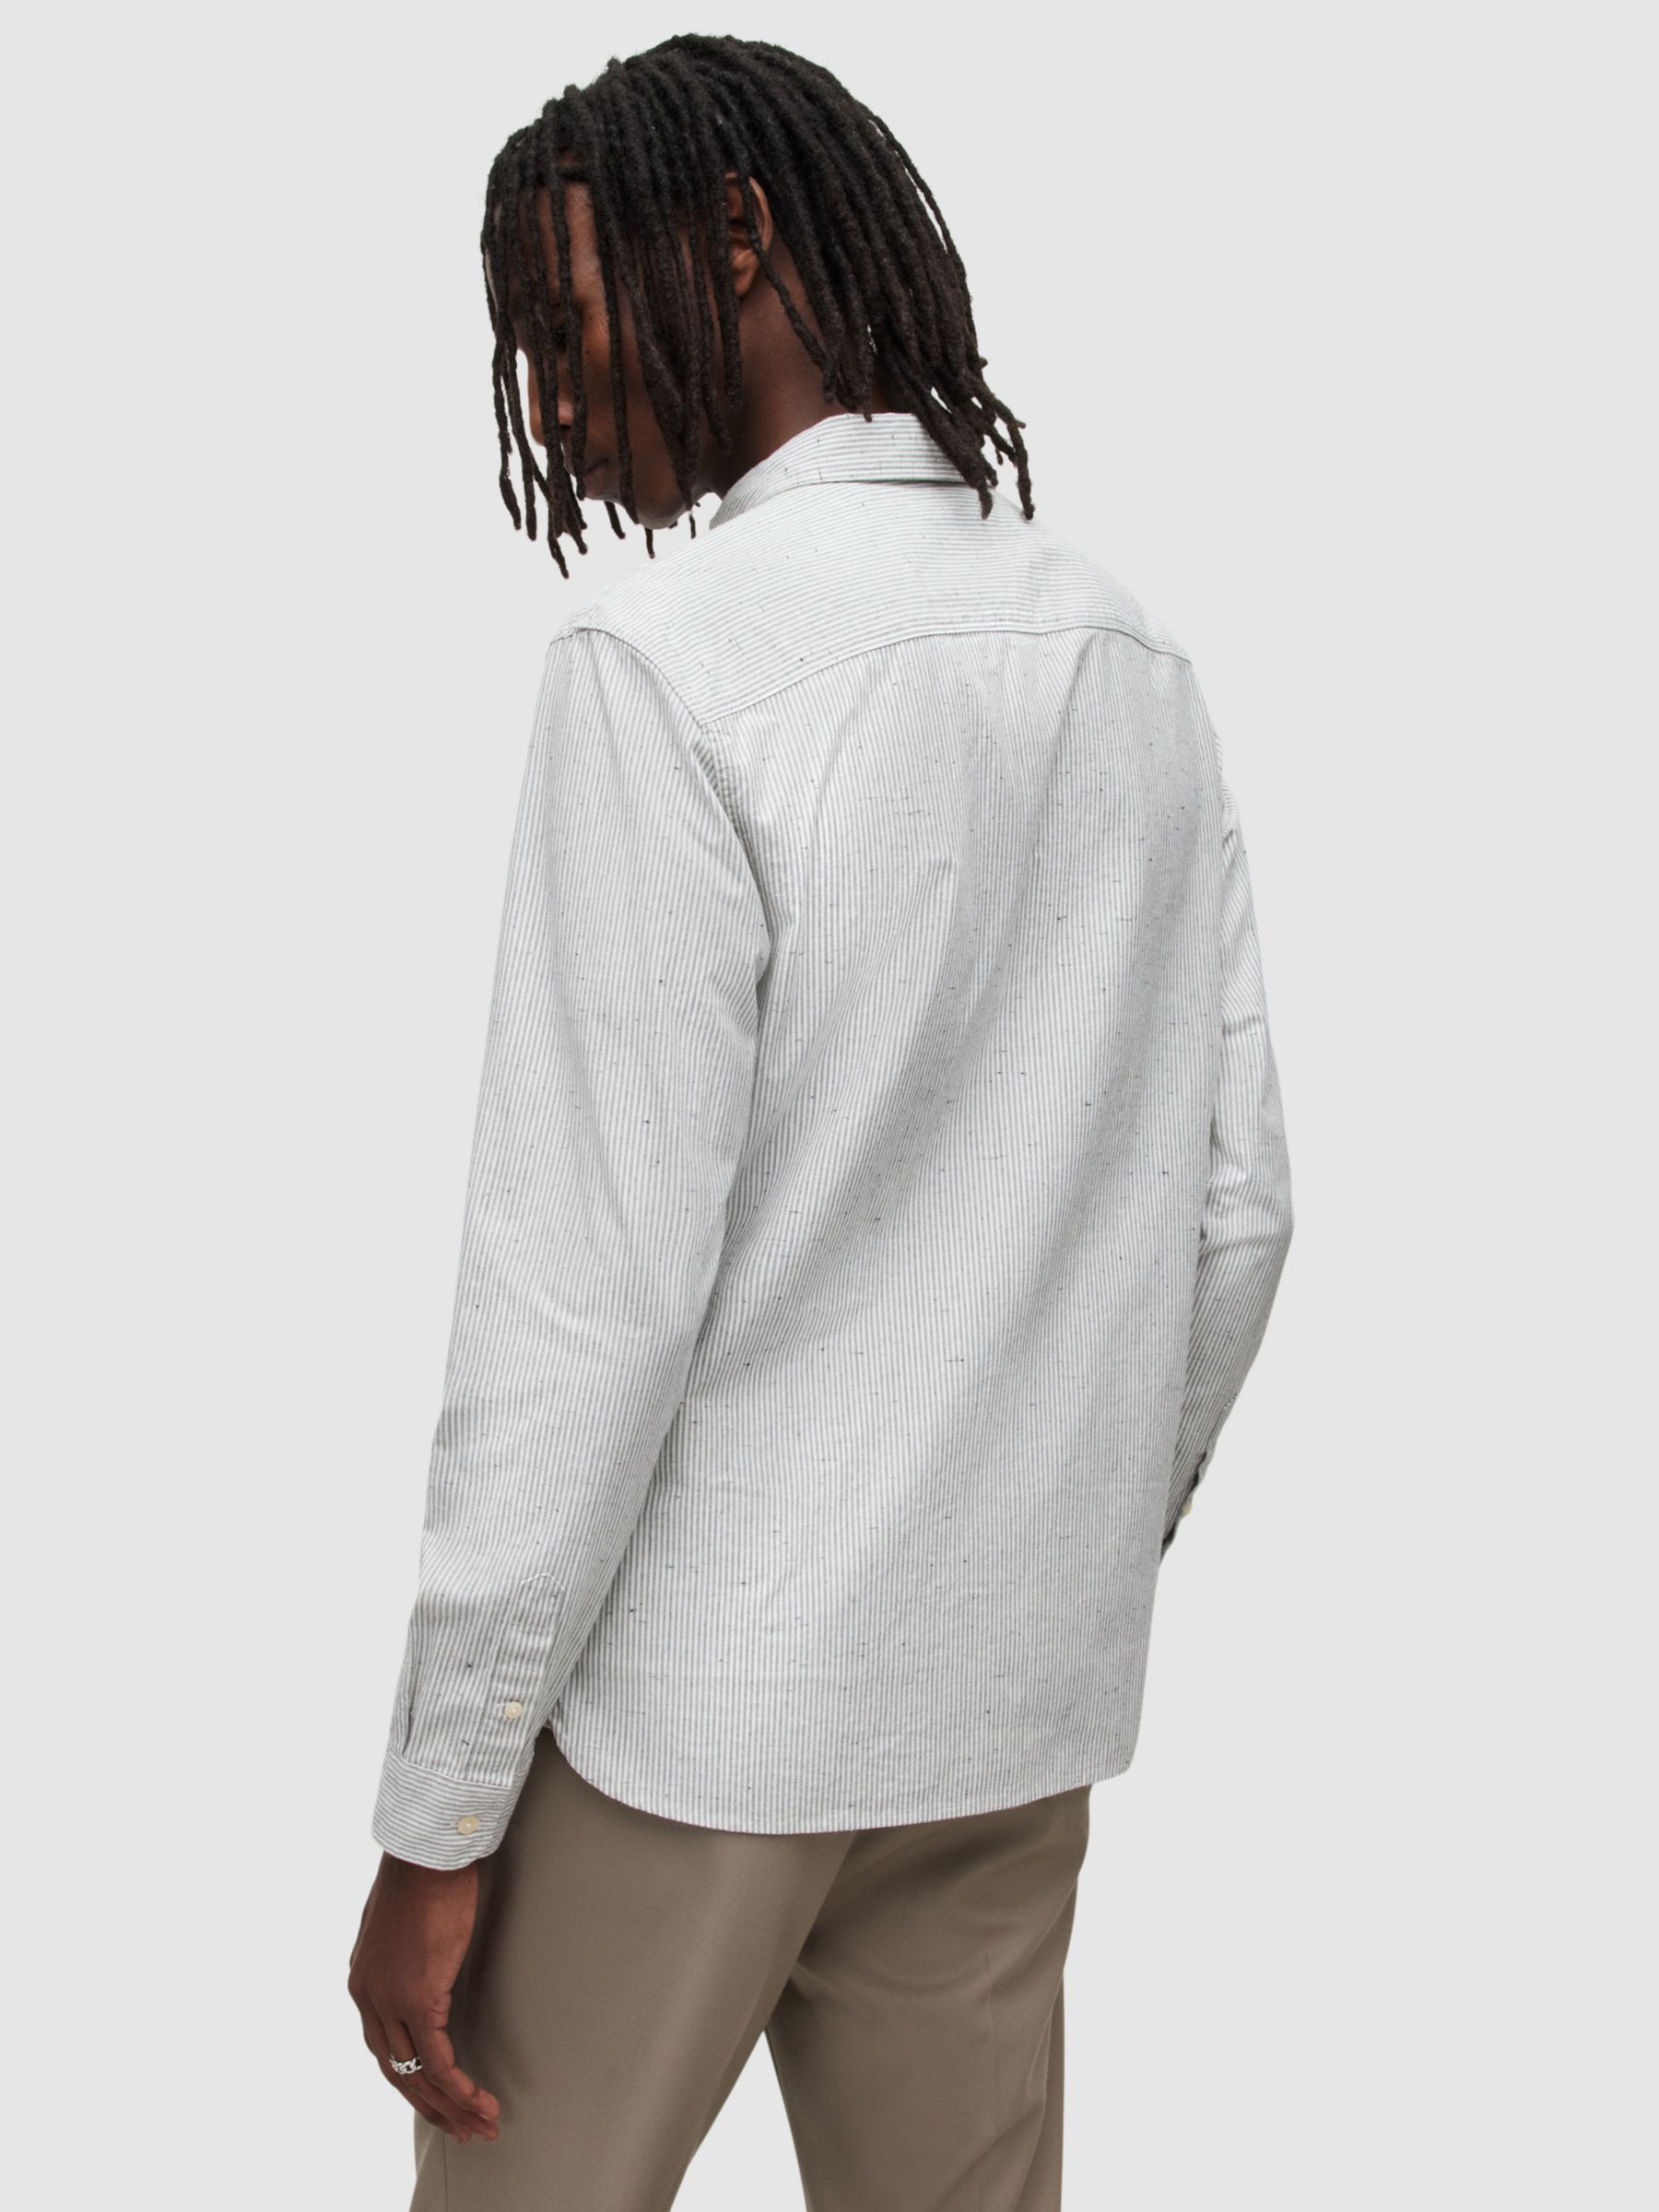 AllSaints Flavin Long Sleeve Striped Shirt, White/Grey, XS